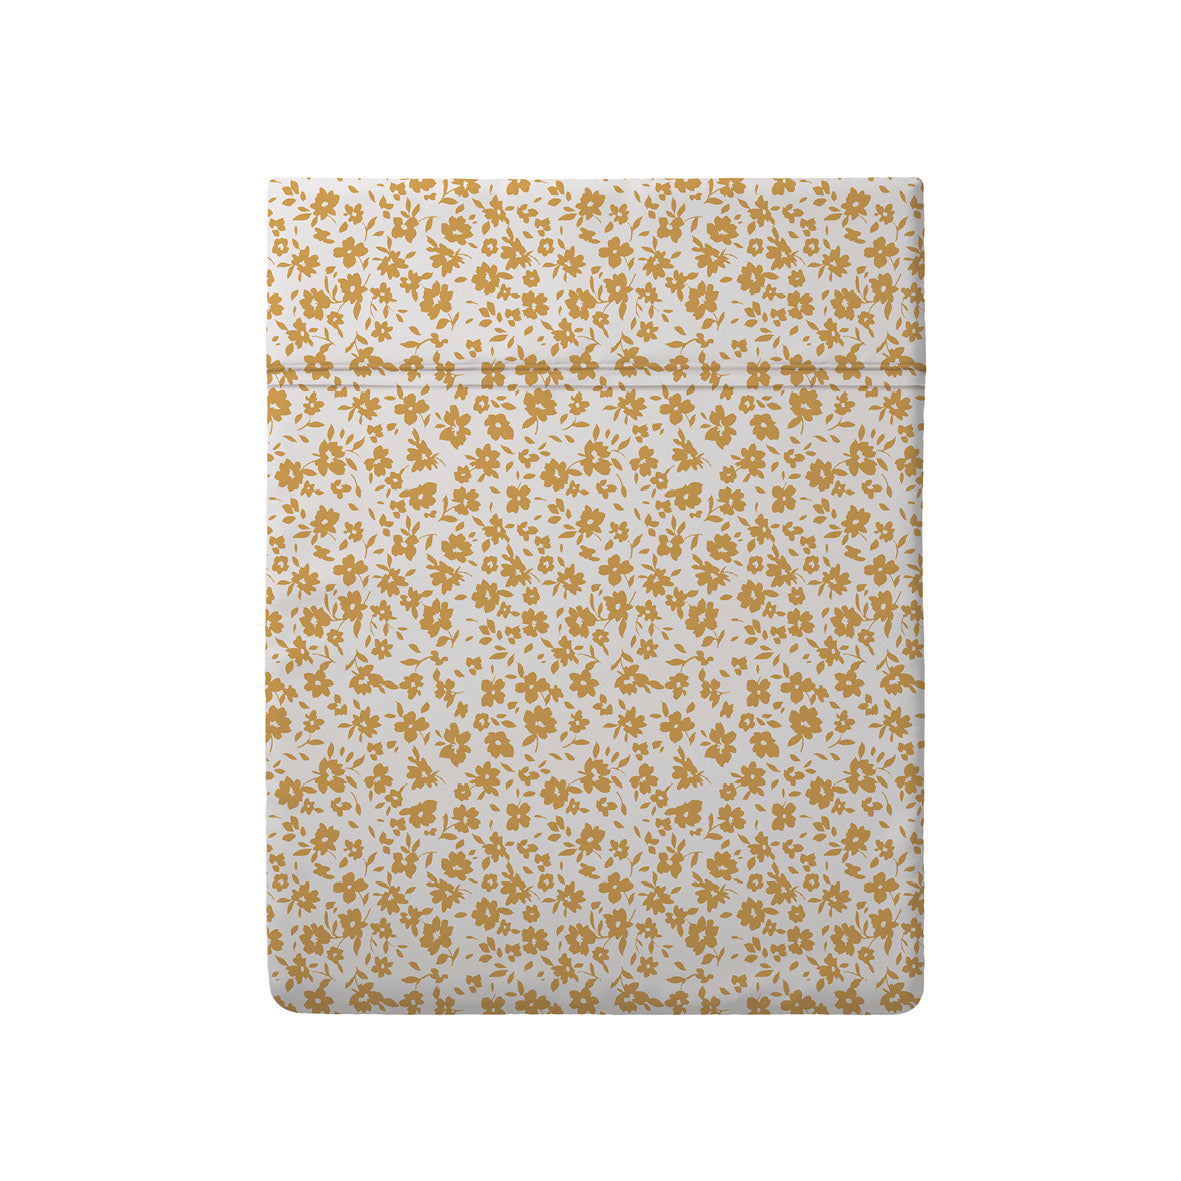 Flat sheet cotton satin - Les Yeux de Suzanne White/yellow